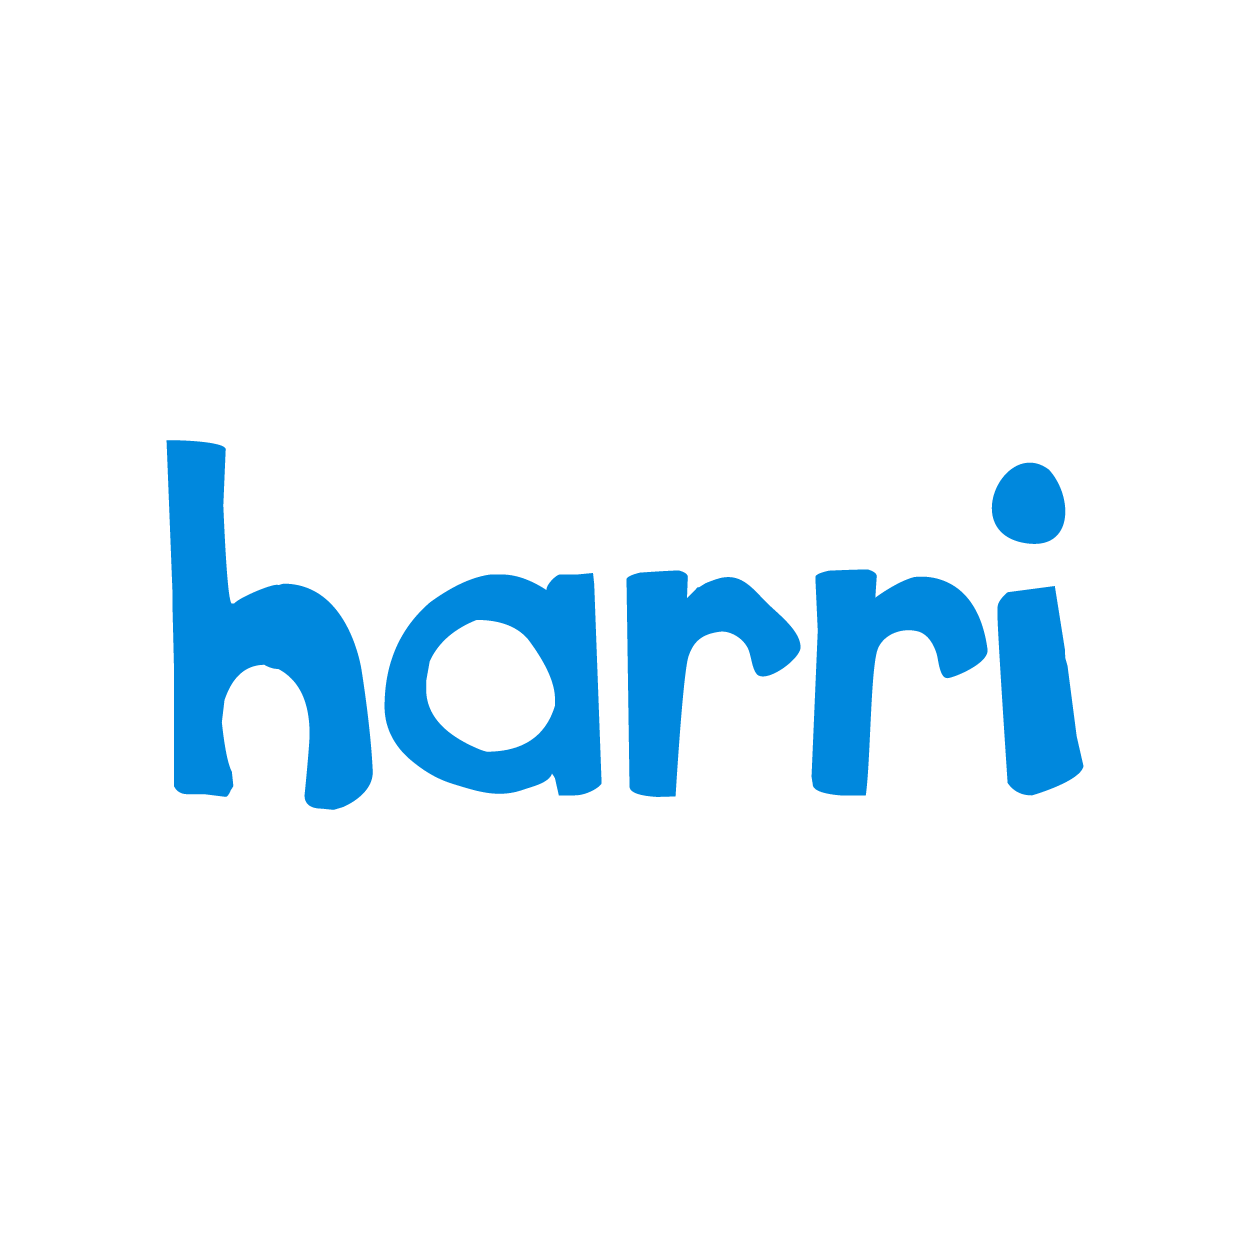 HARRI